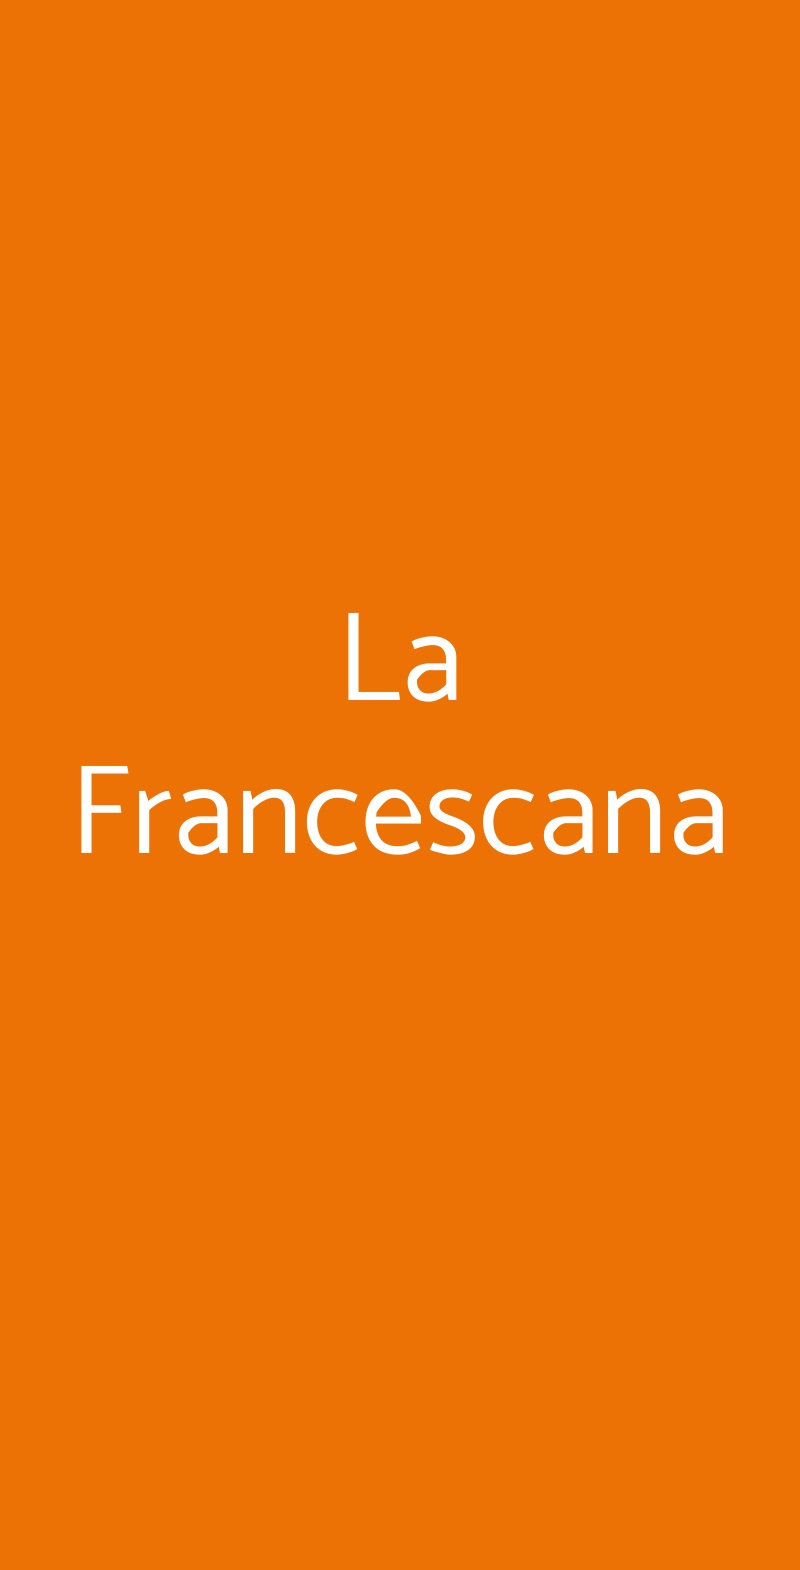 La Francescana Roma menù 1 pagina